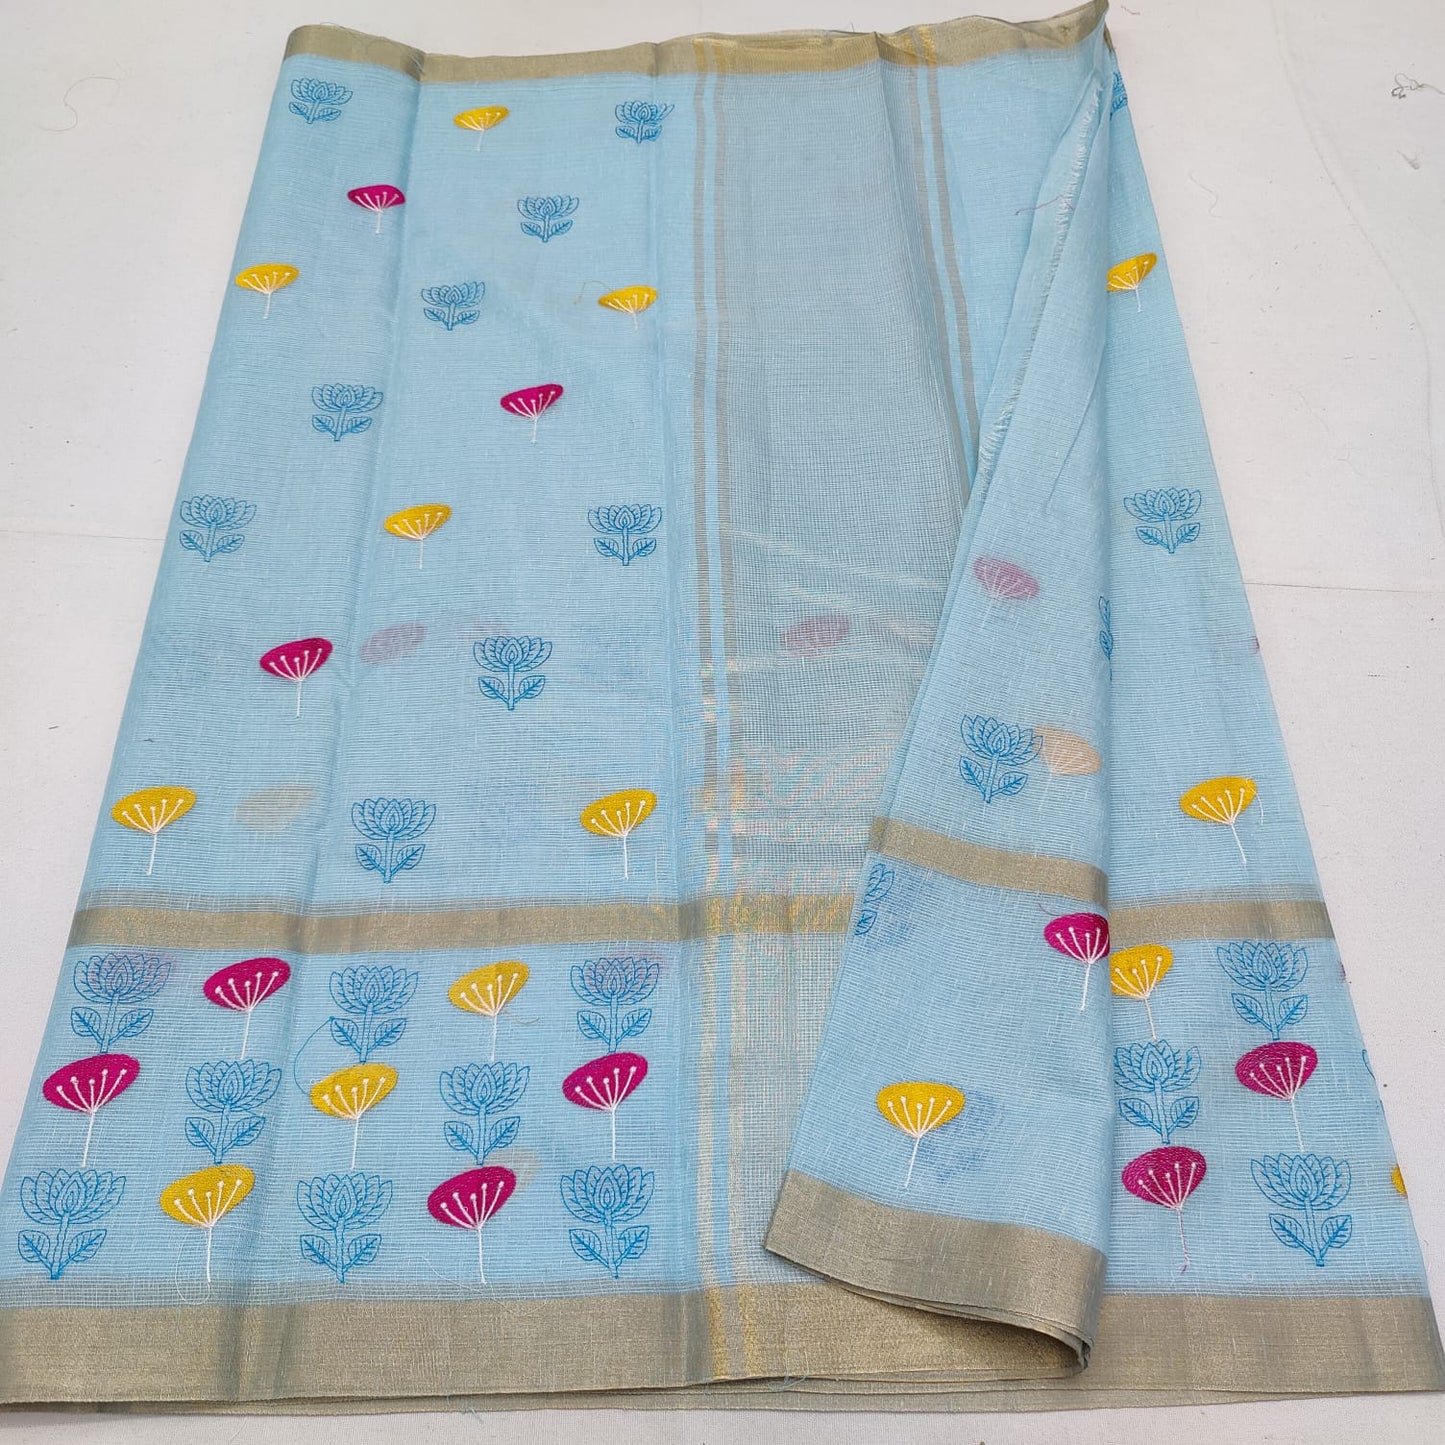 Tissue kota embroidery saree